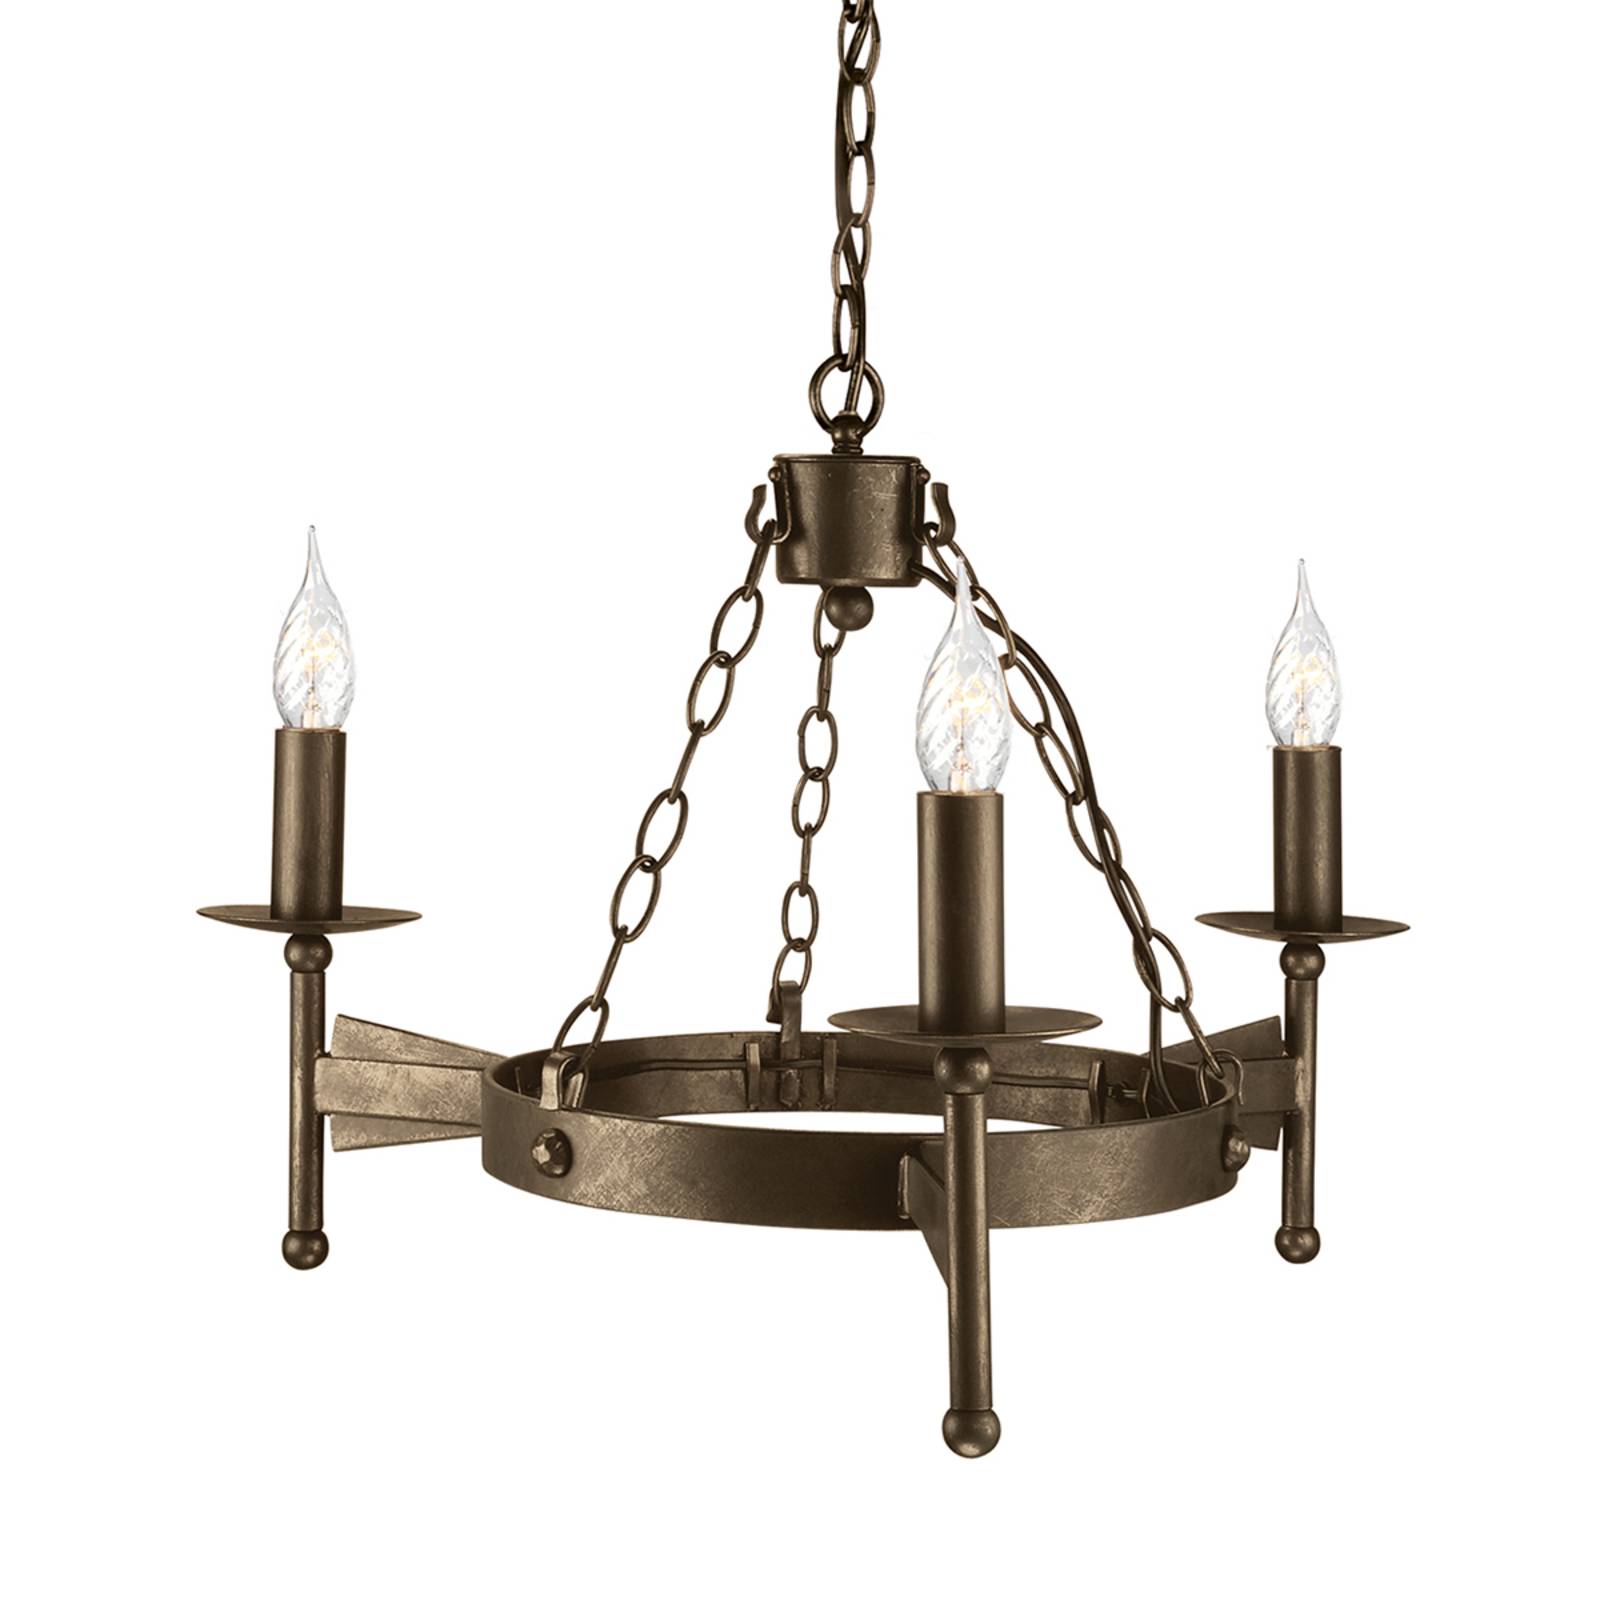 Middeleeuwse hanglamp CROMWELL, 3-lichts